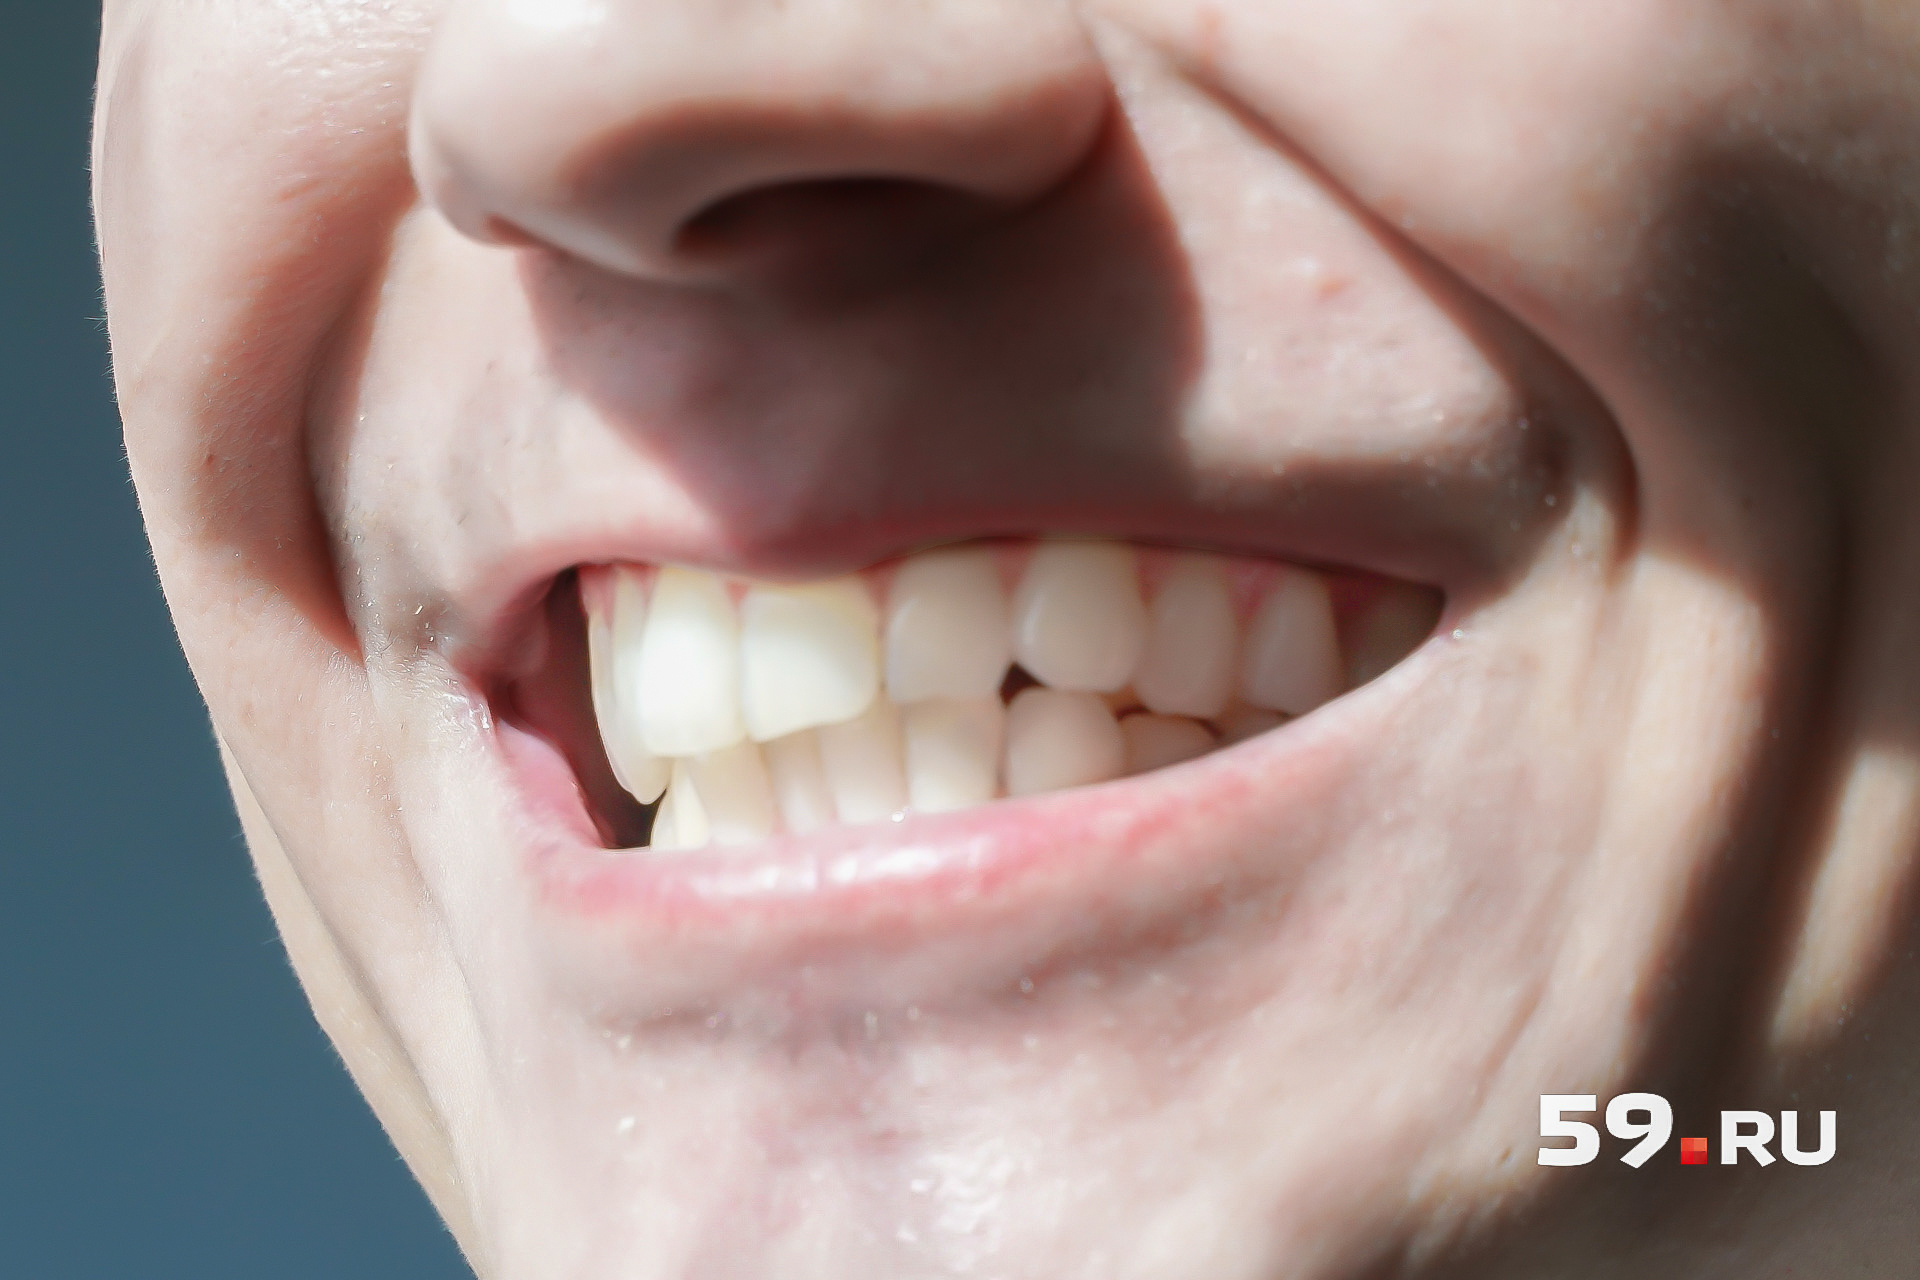 Эти зубы белые от природы. Как нам рассказал врач, здоровые зубы могут быть разных цветов